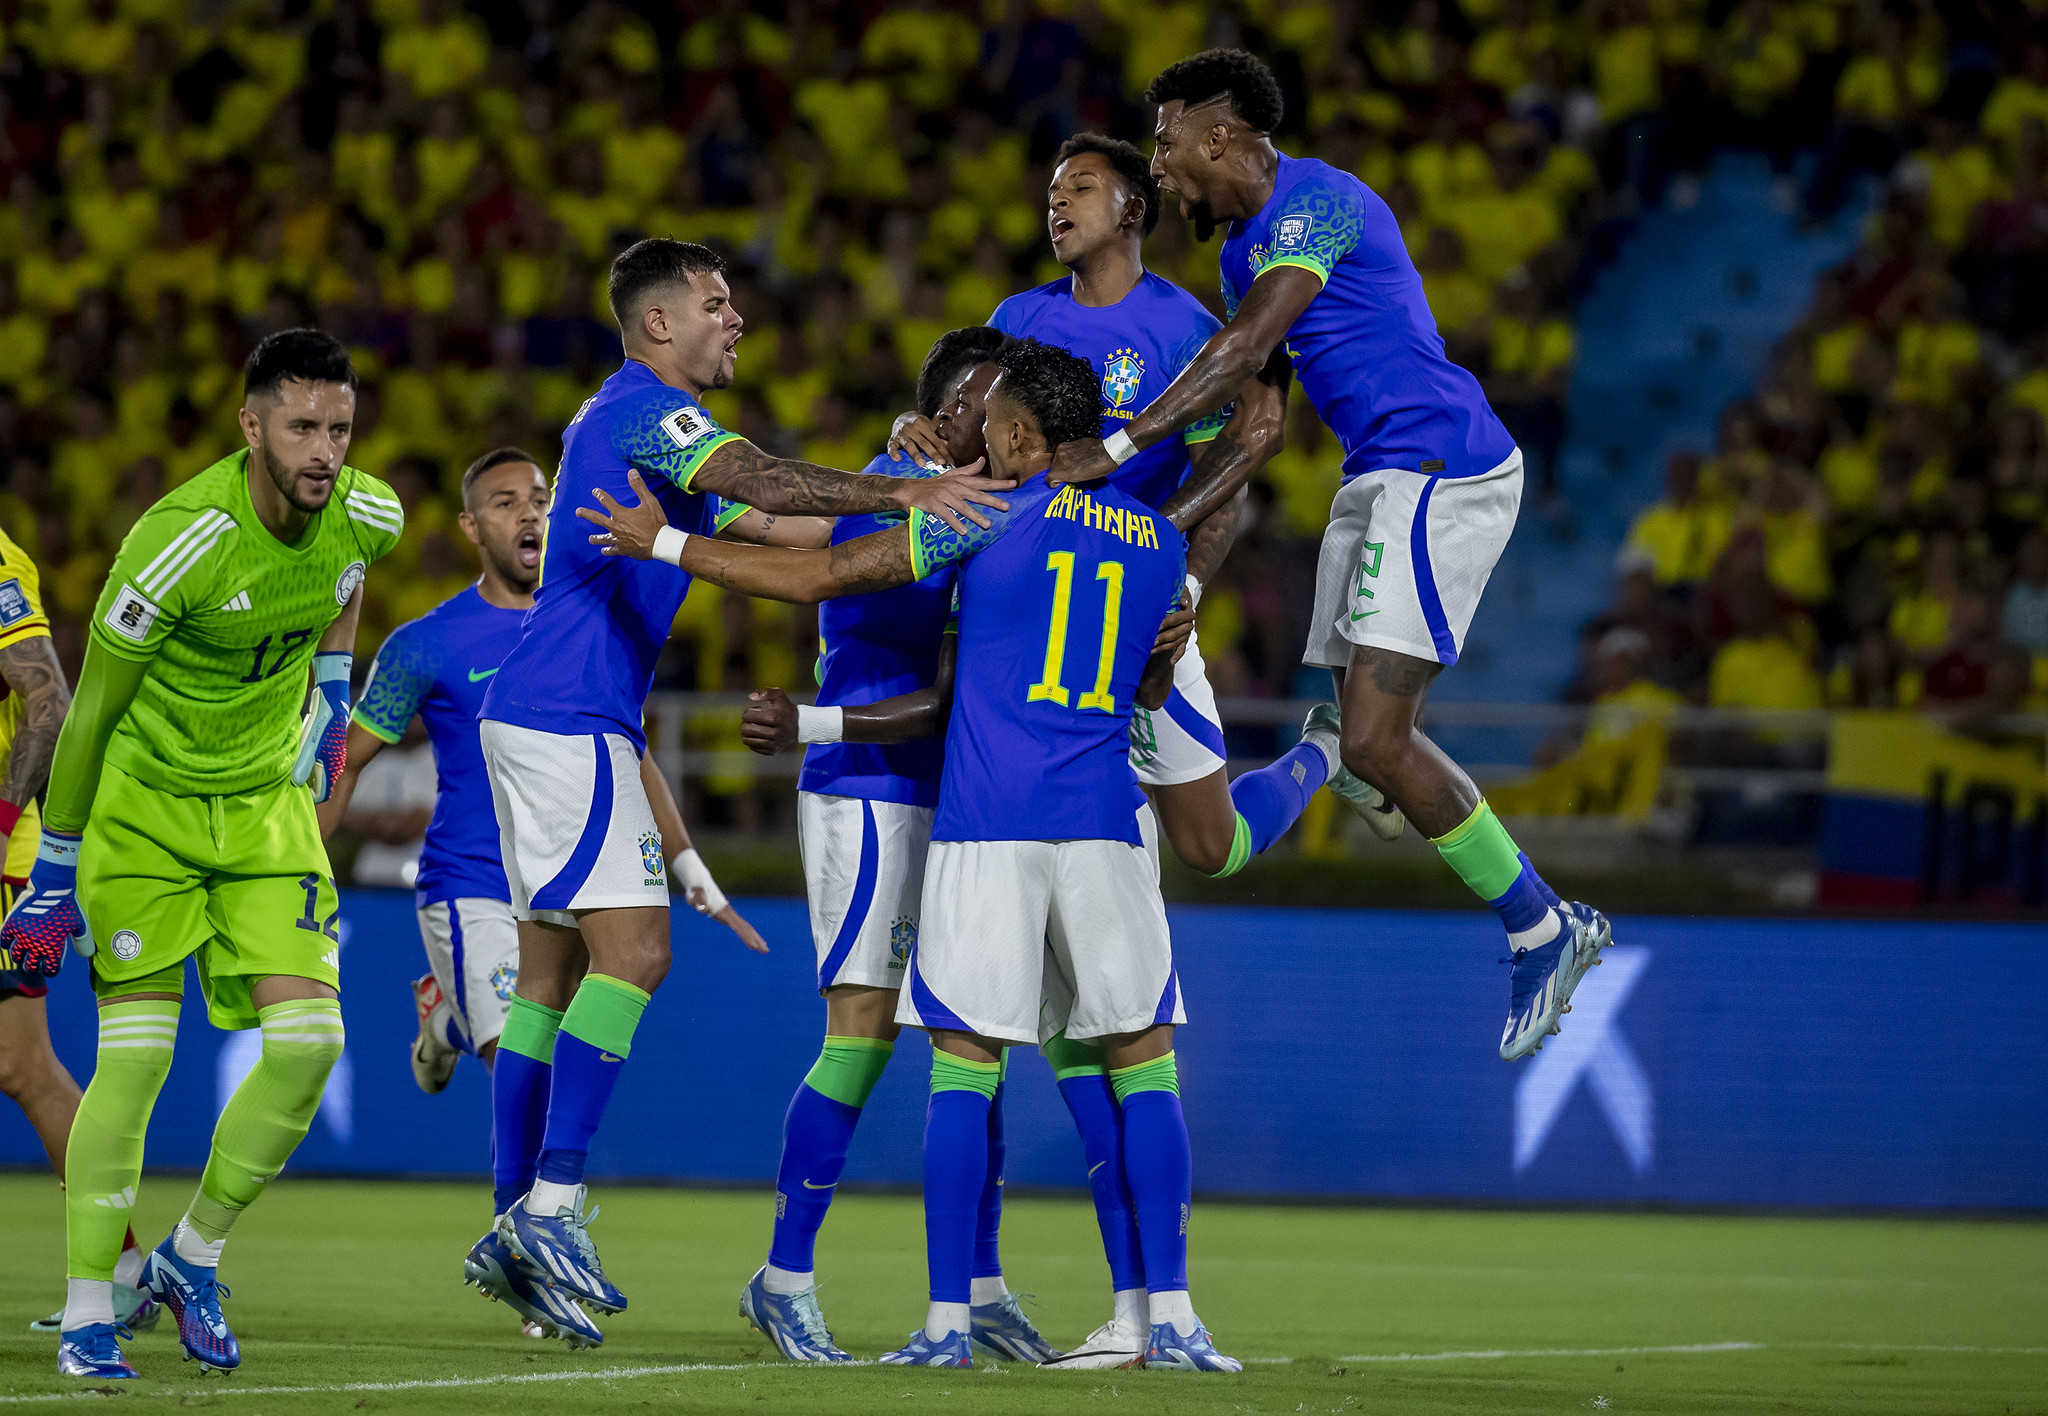 Brasil x Argentina: Confira onde asssistir jogo do Brasil ao vivo hoje  (21); veja horário e escalação